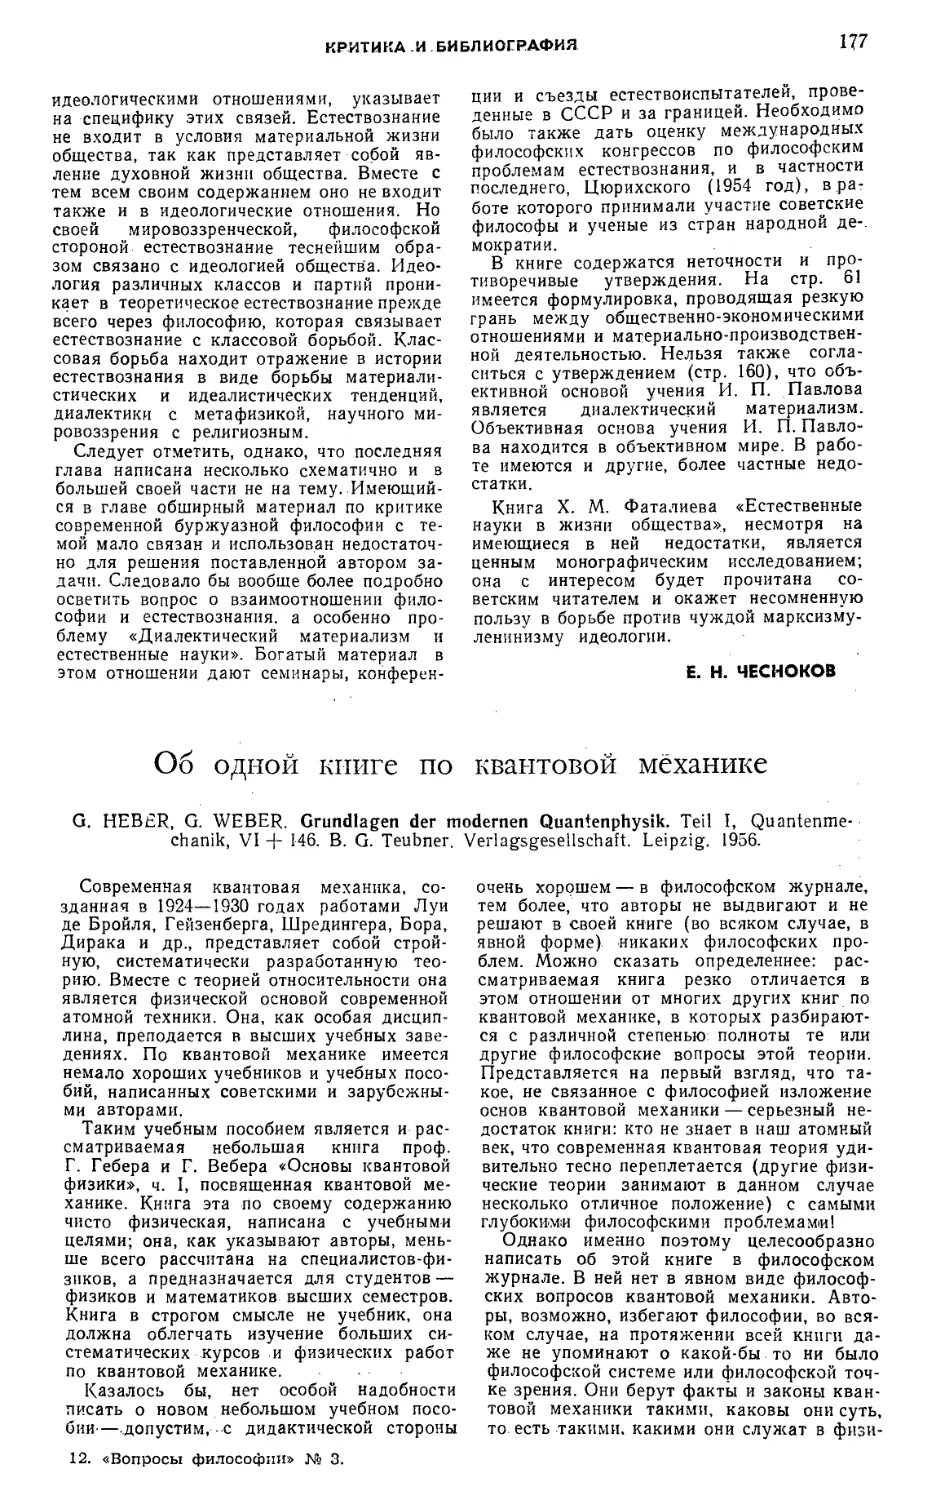 М. Э. Омельяновский — Об одной книге по квантовой механике